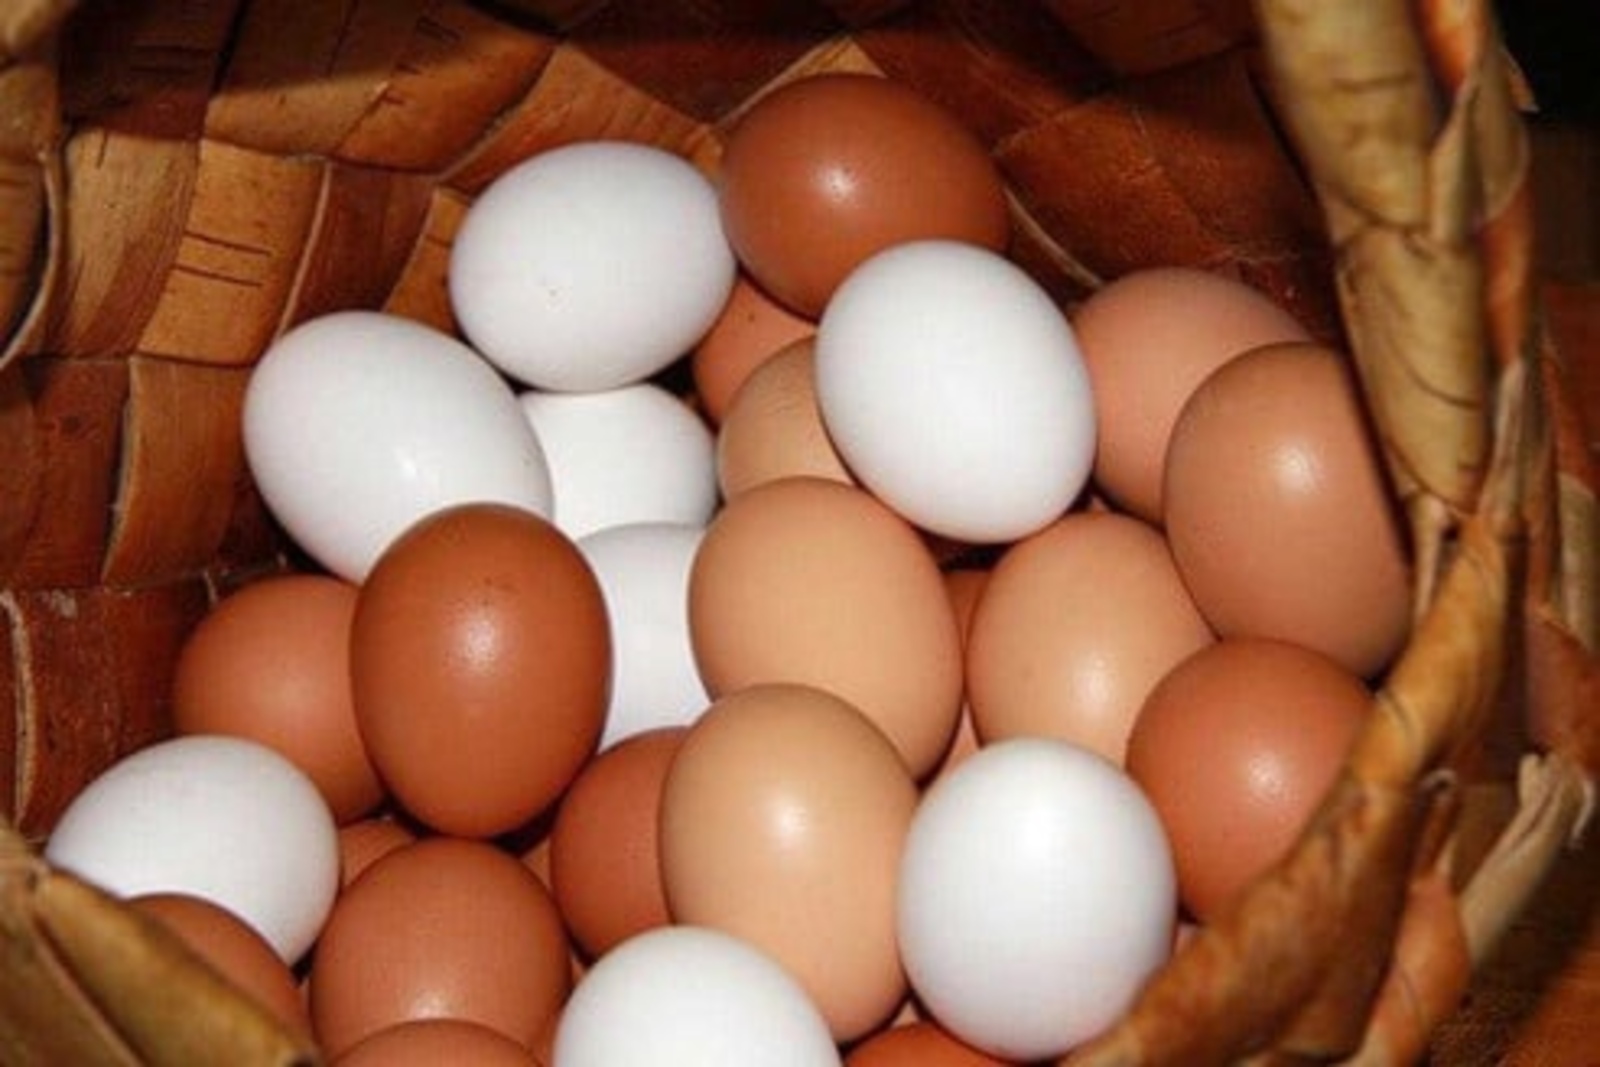 Интересные факты о яйцах